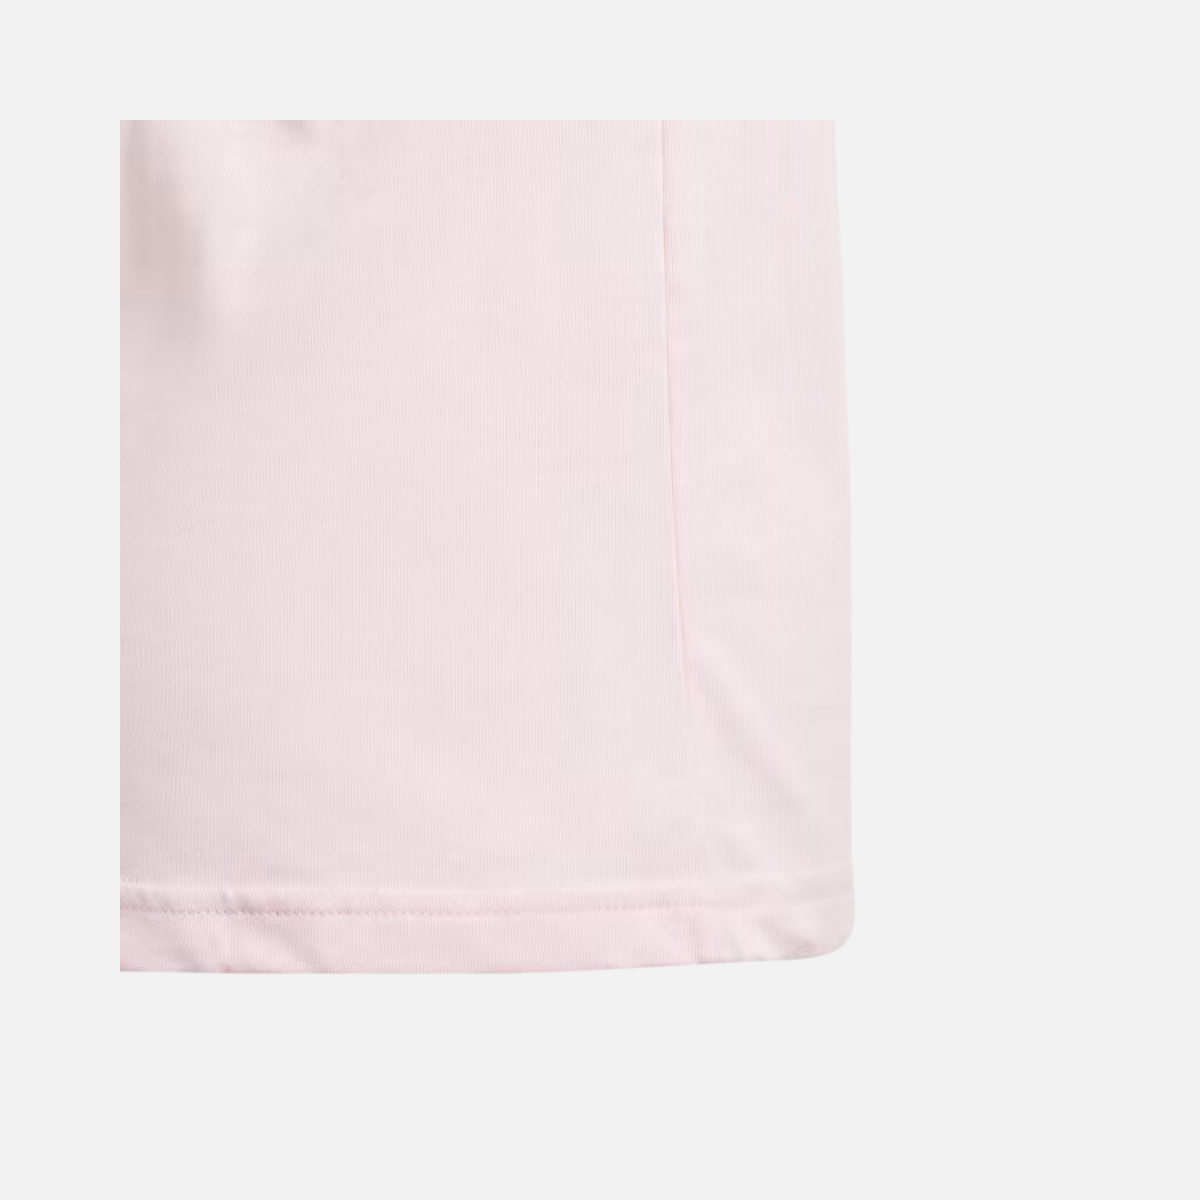 Adidas Essentials Big Logo Kids Girls Cotton T-shirt (7-15 Year) -Clear Pink/White